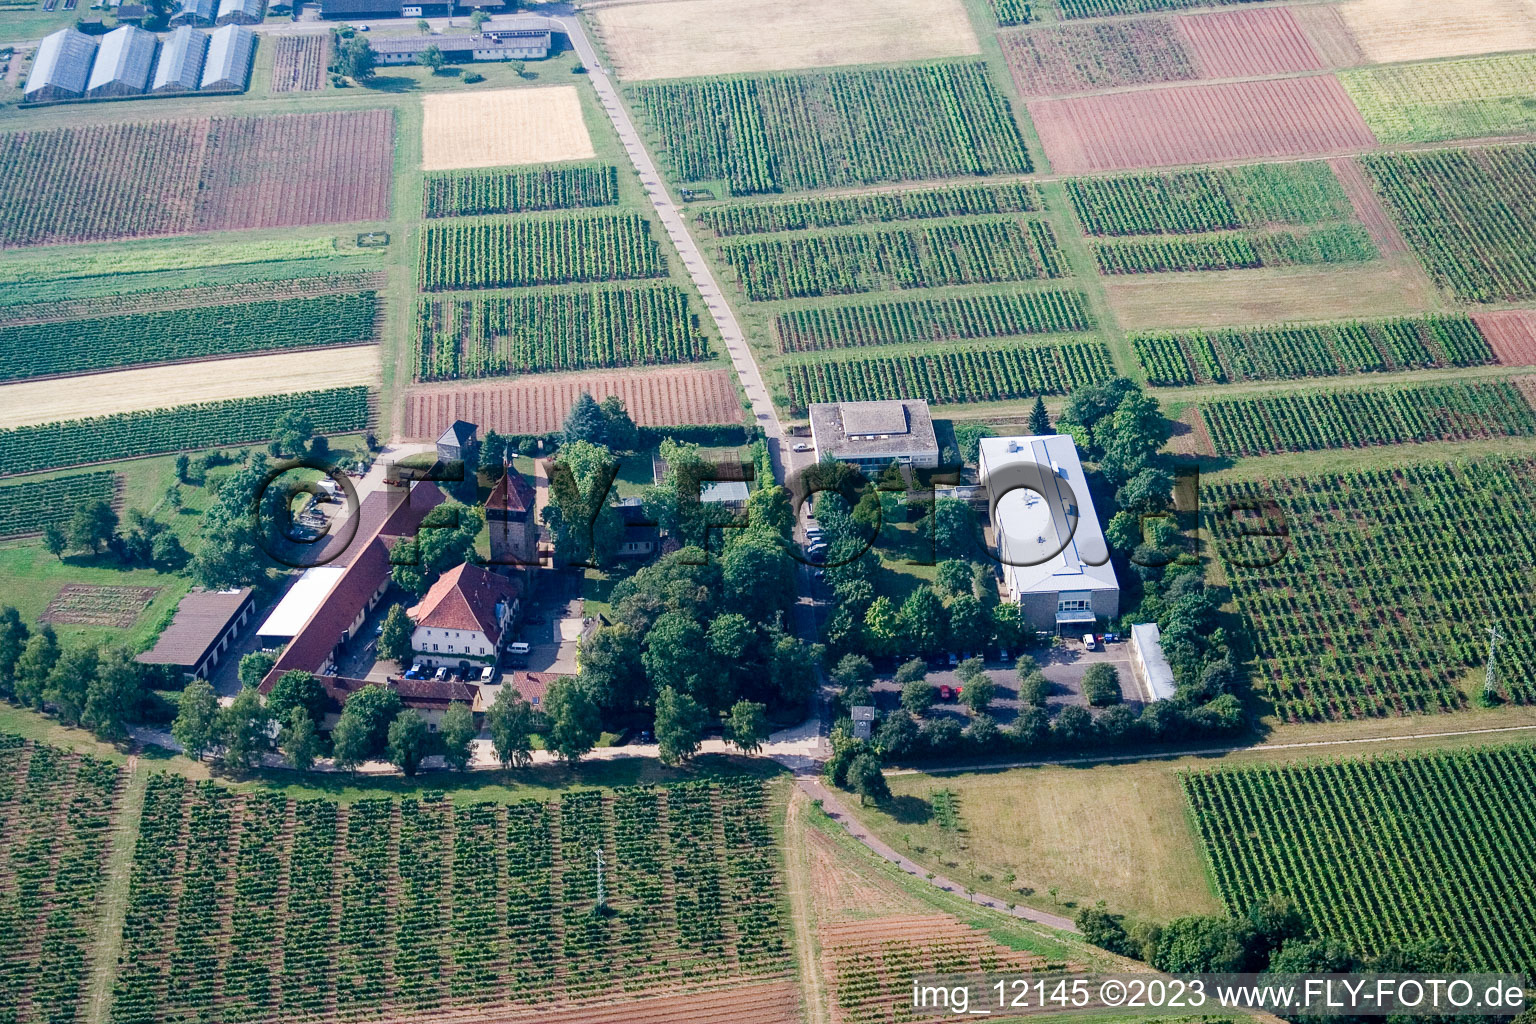 Vue aérienne de BFA-Geilweilerhof (Institut de recherche sur la vigne) à Siebeldingen dans le département Rhénanie-Palatinat, Allemagne